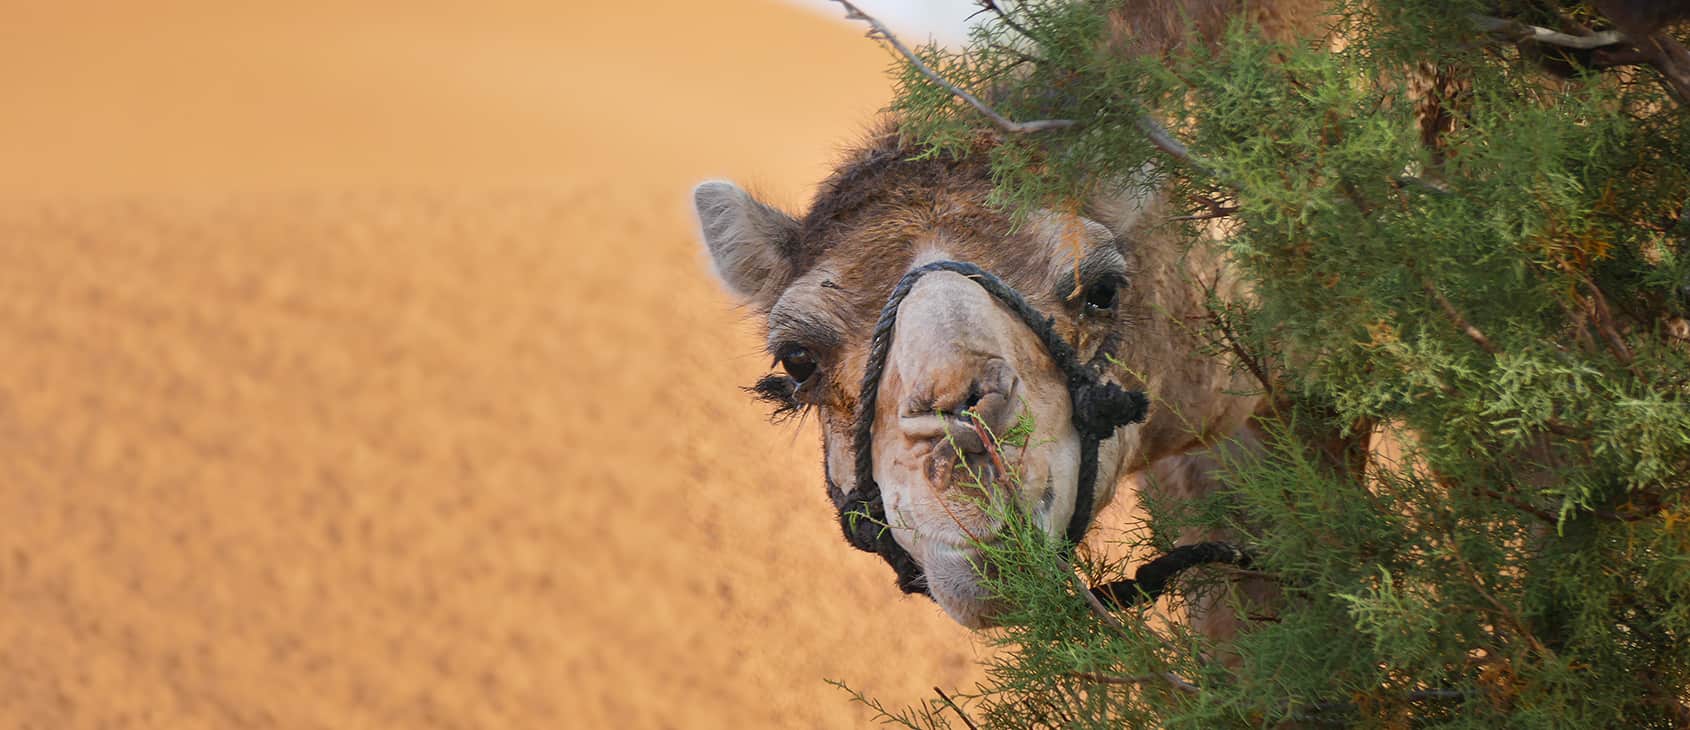 Camel enjoying some foliage